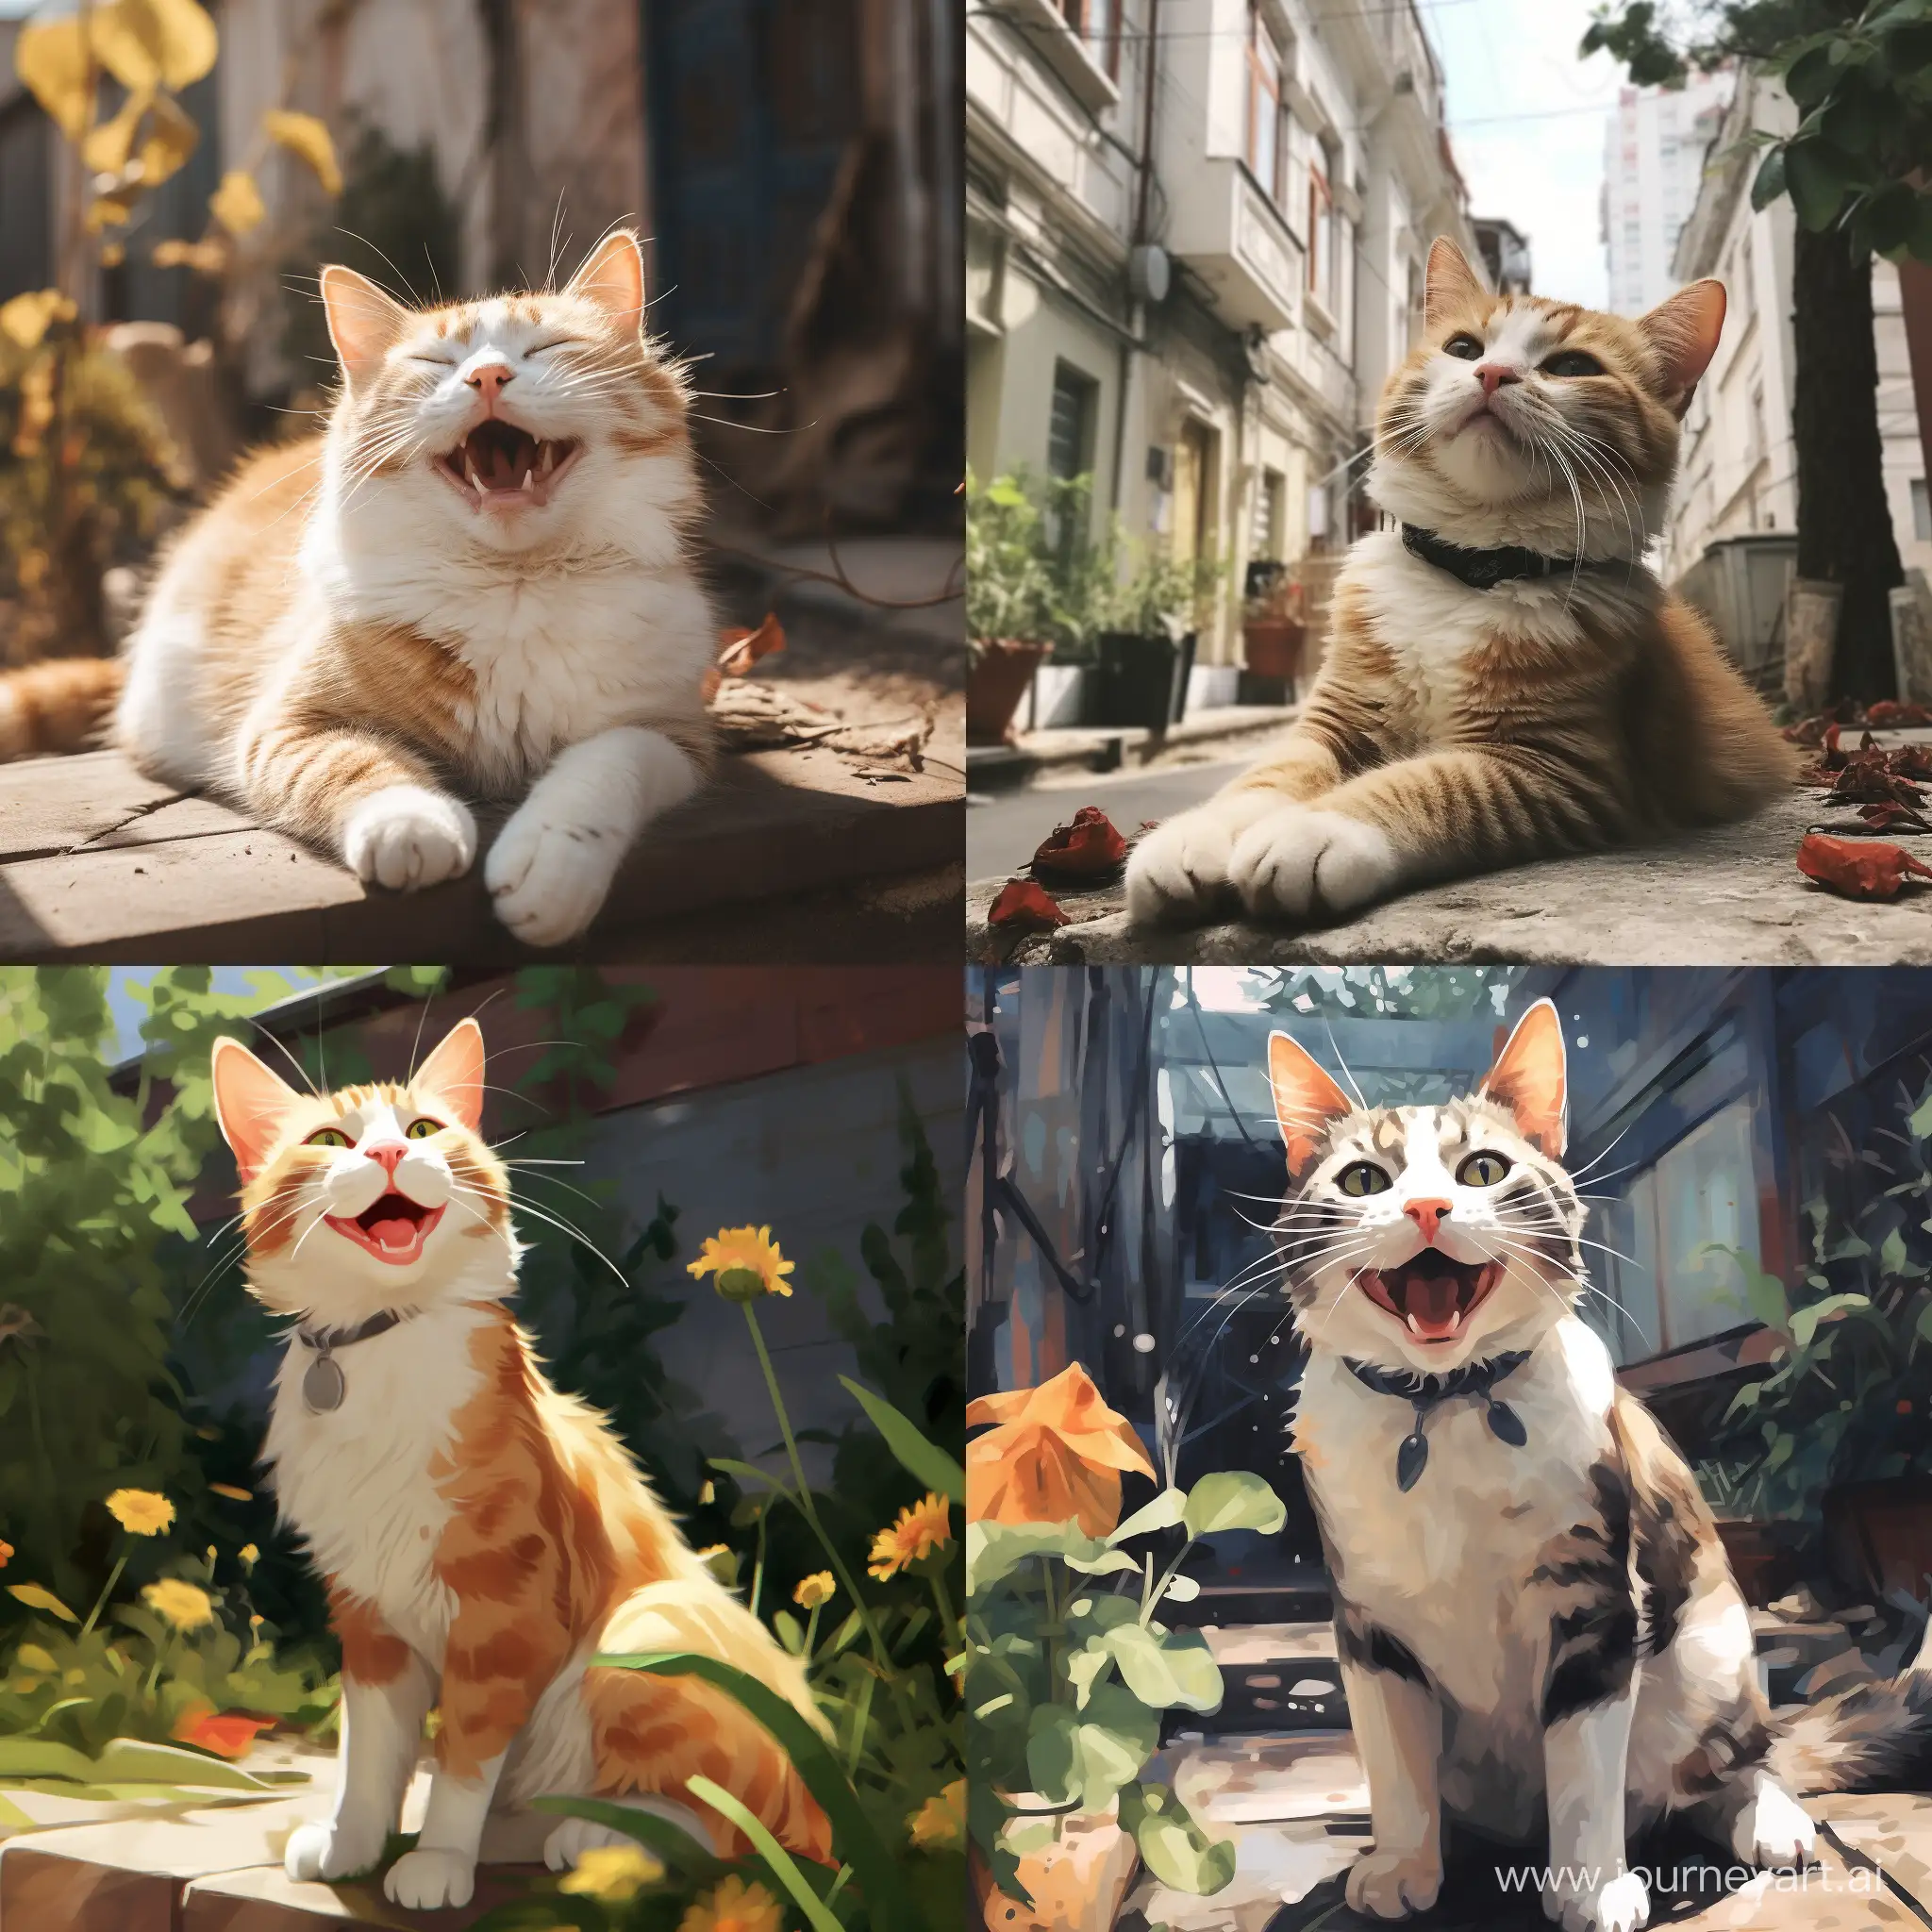 Joyful-Stray-Cat-in-Urban-Setting